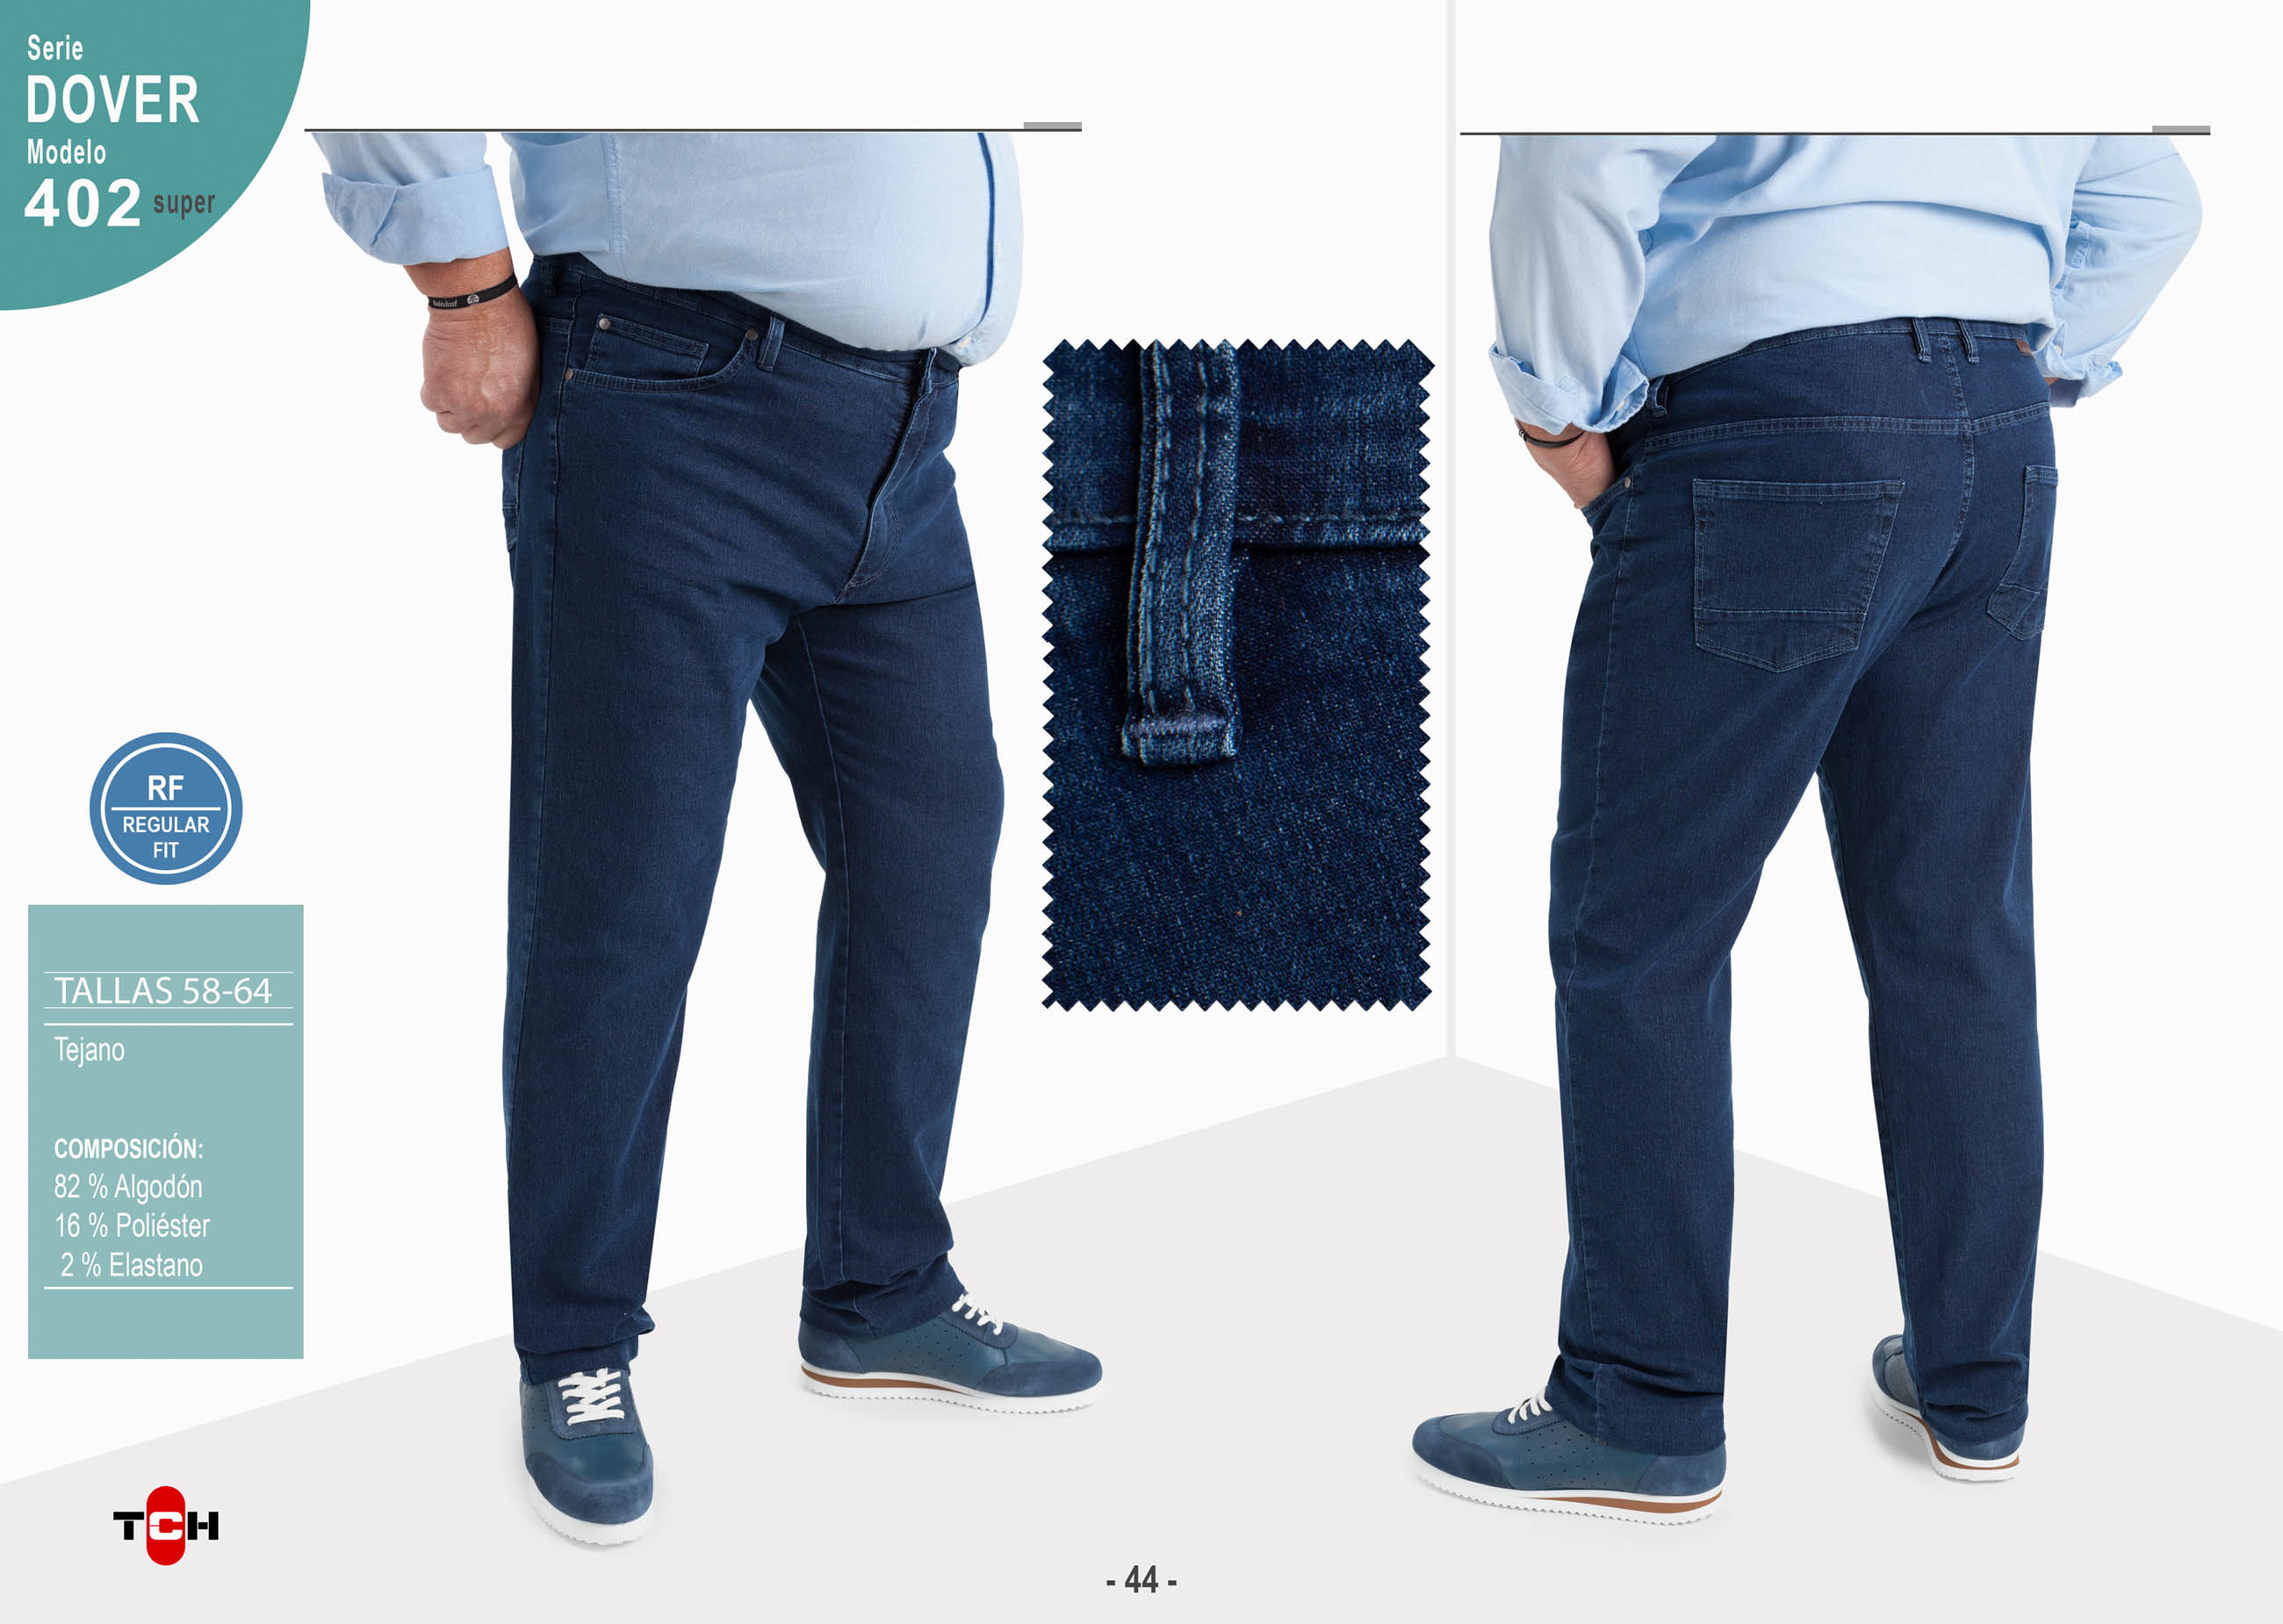 Jeans para hombre de tallas grandes en tejido vaquero azul medio elástico con remaches de adorno. Regular Fit